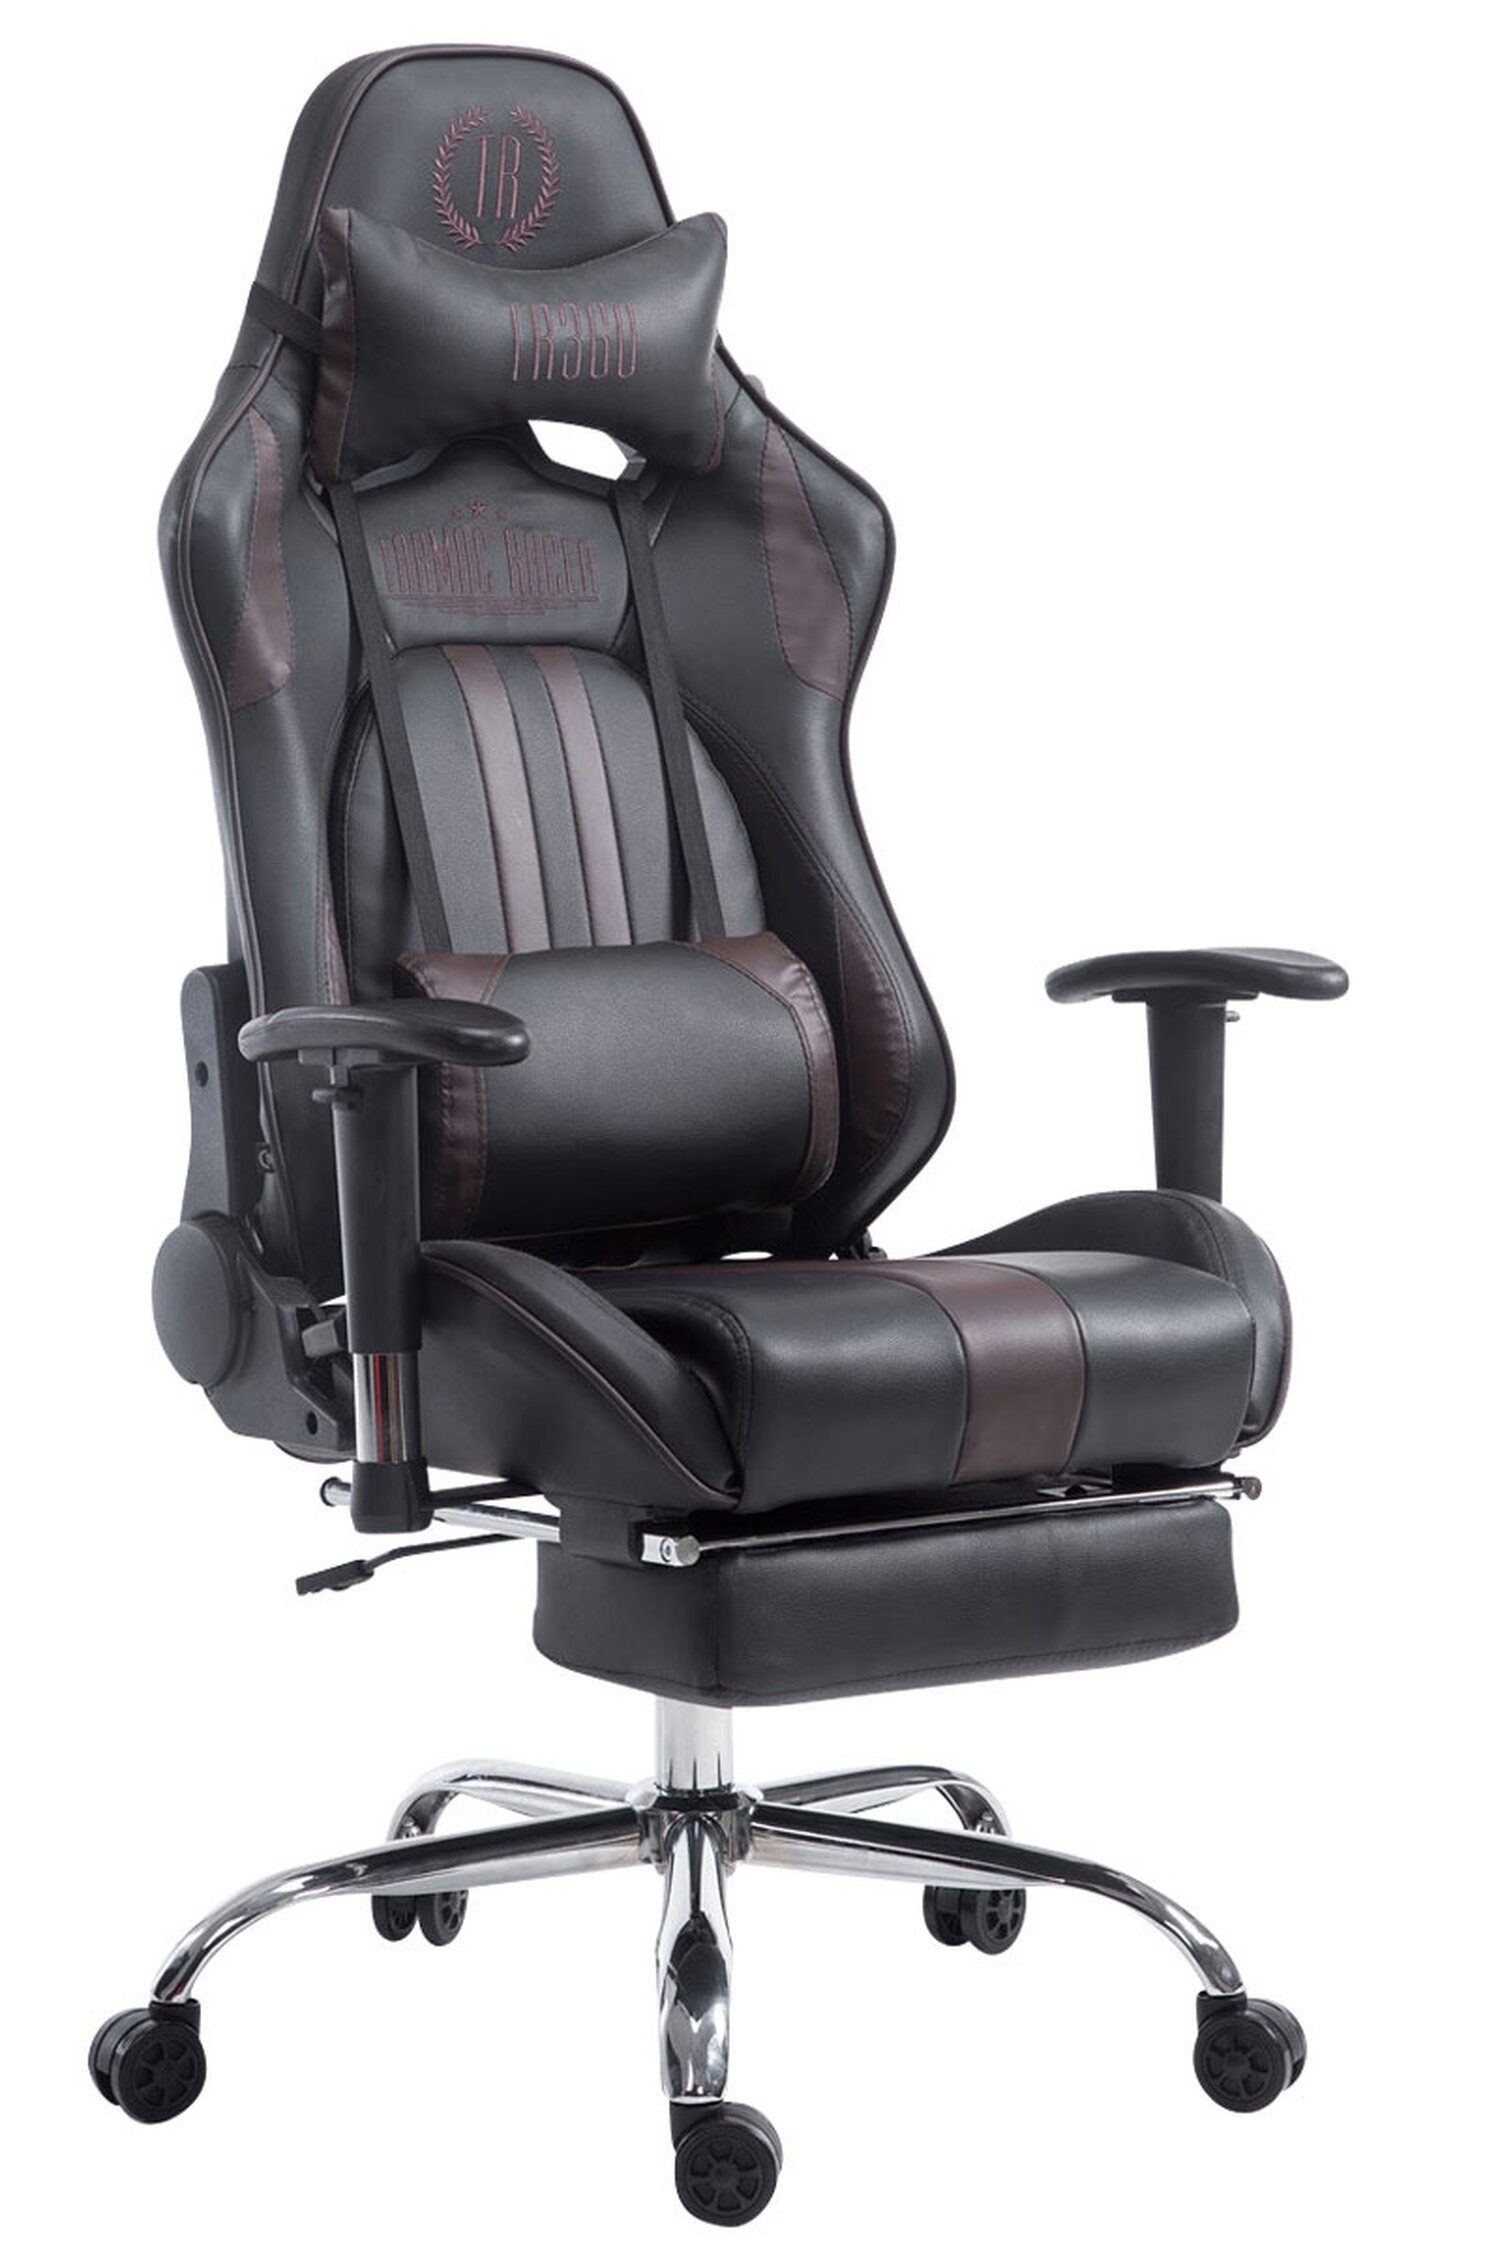 TPFLiving Gaming-Stuhl Limitless-2 mit bequemer Rückenlehne - höhenverstellbar - 360° drehbar (Schreibtischstuhl, Drehstuhl, Gamingstuhl, Racingstuhl, Chefsessel), Gestell: Metall chrom - Sitzfläche: Kunstleder schwarz/braun